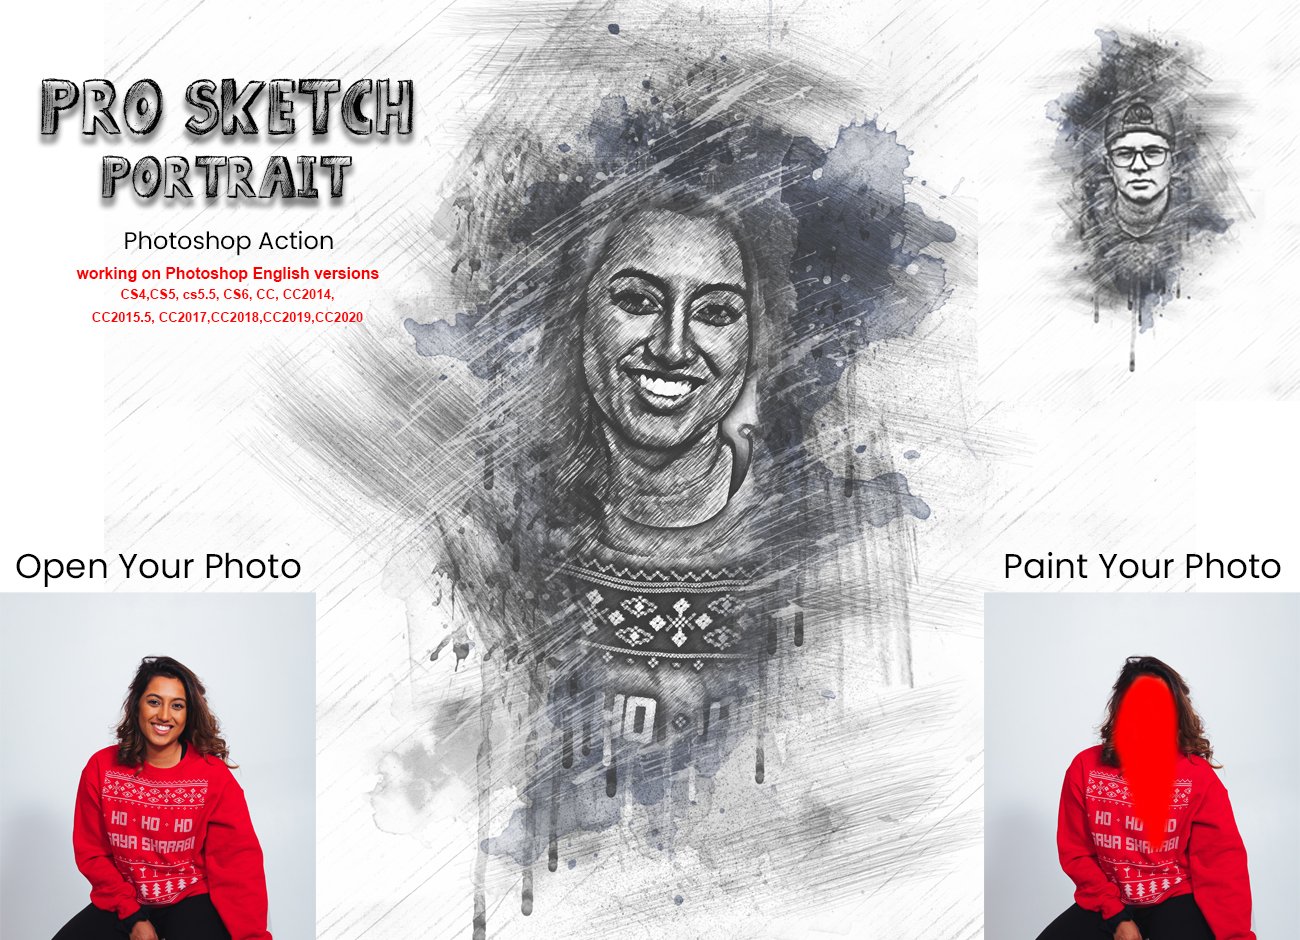 Pro Sketch Portrait Photoshop Actioncover image.